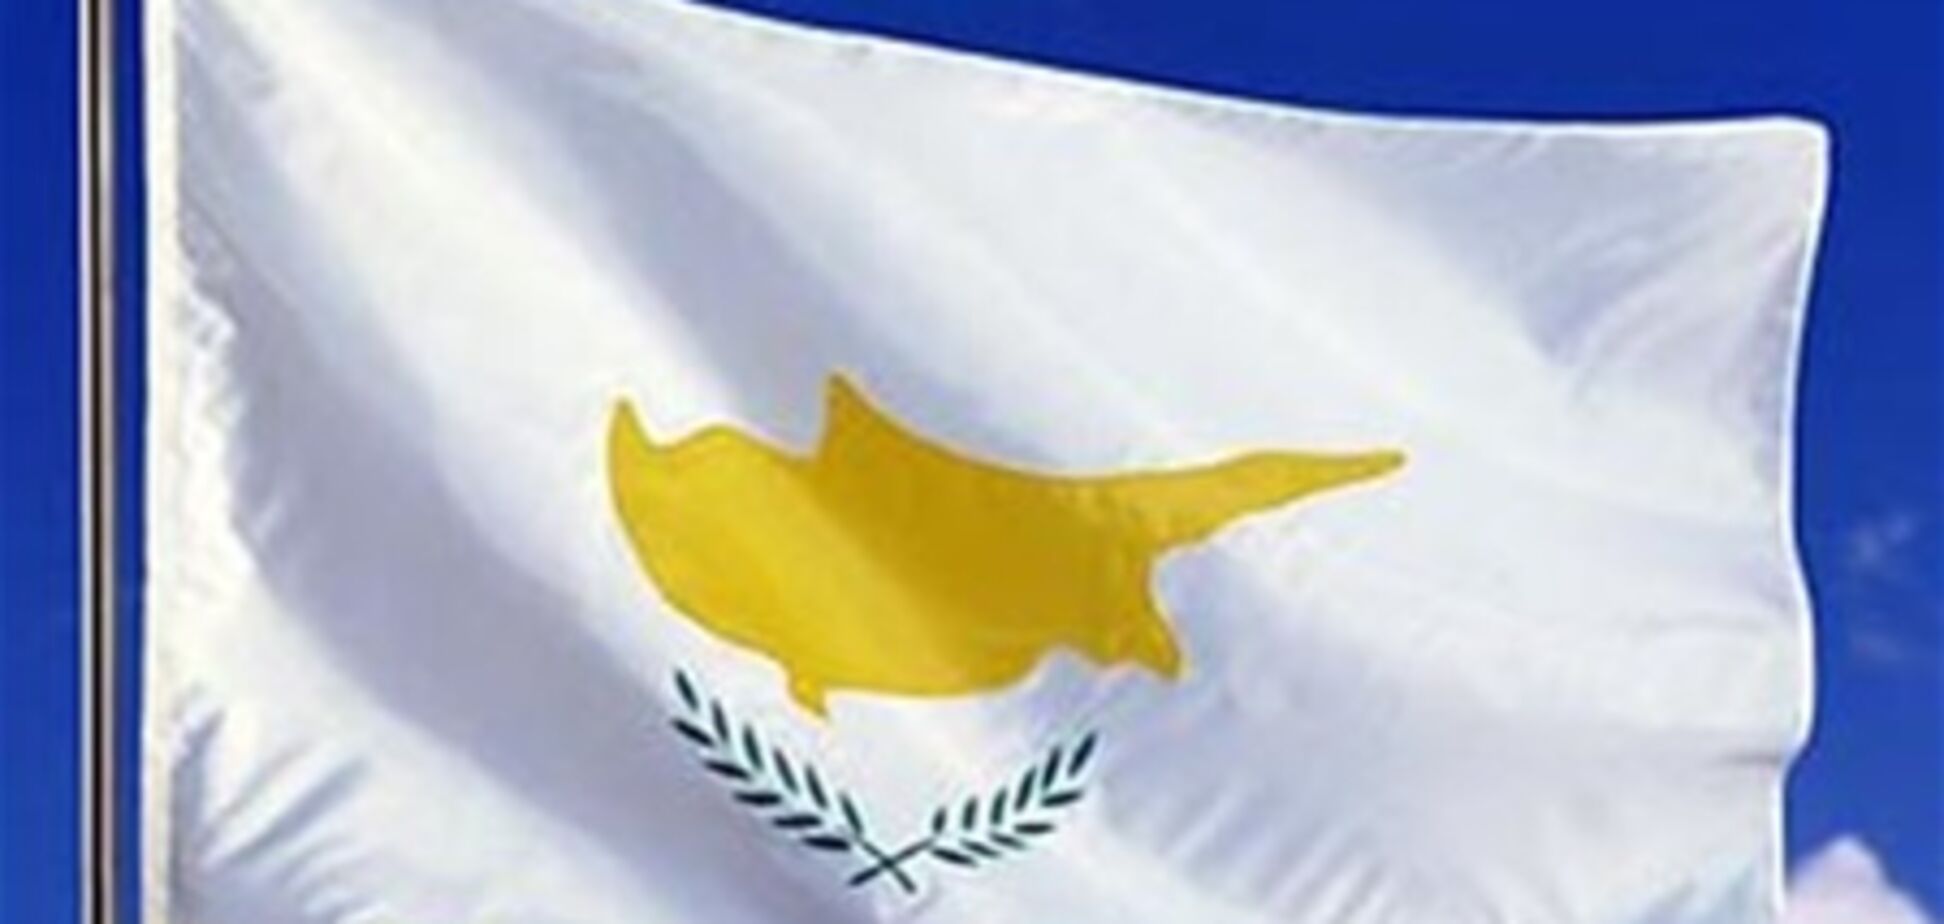 Онлайн визы на Кипр смогут получить украинцы